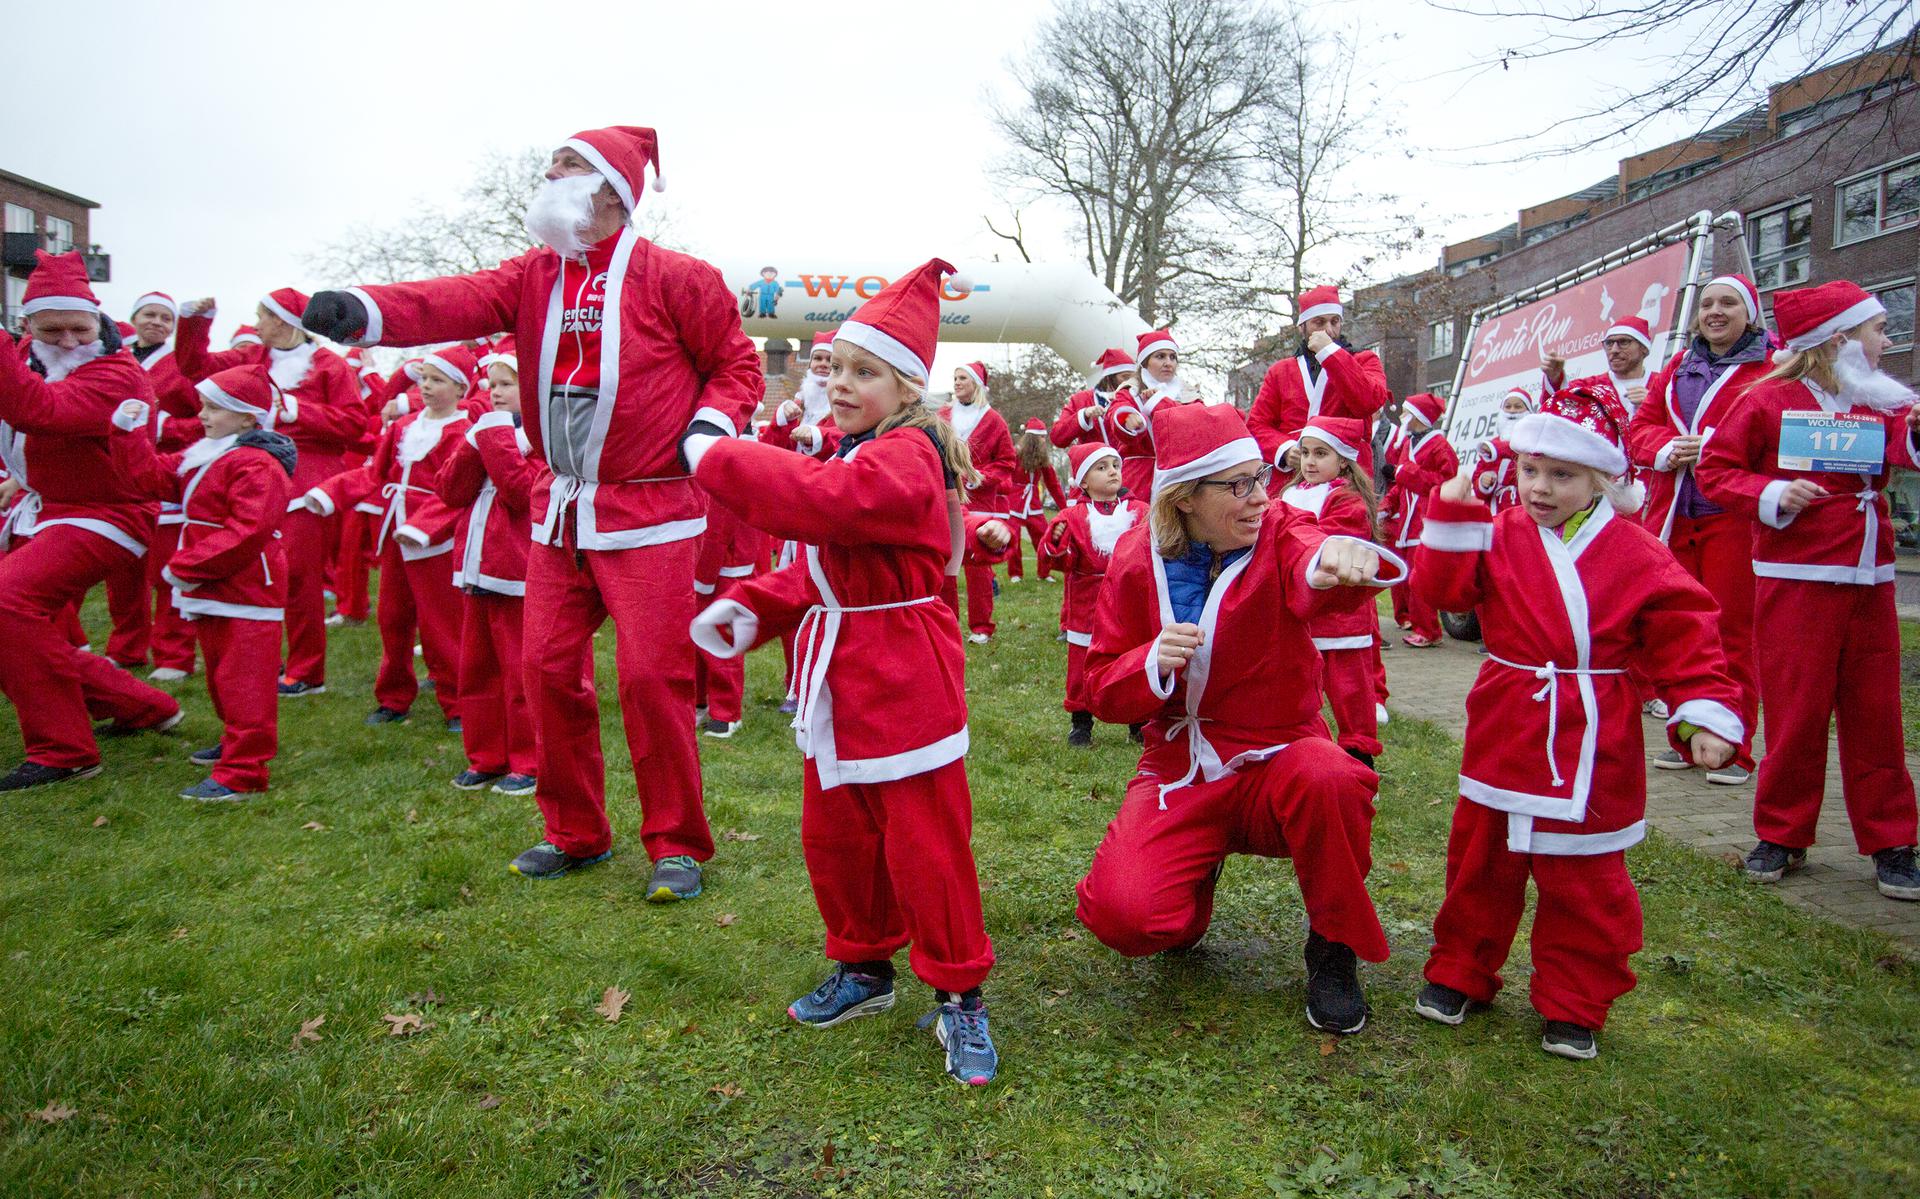 Het is de derde editie van de Santa Run Wolvega. Foto: Iwan van Nieuwenhoven